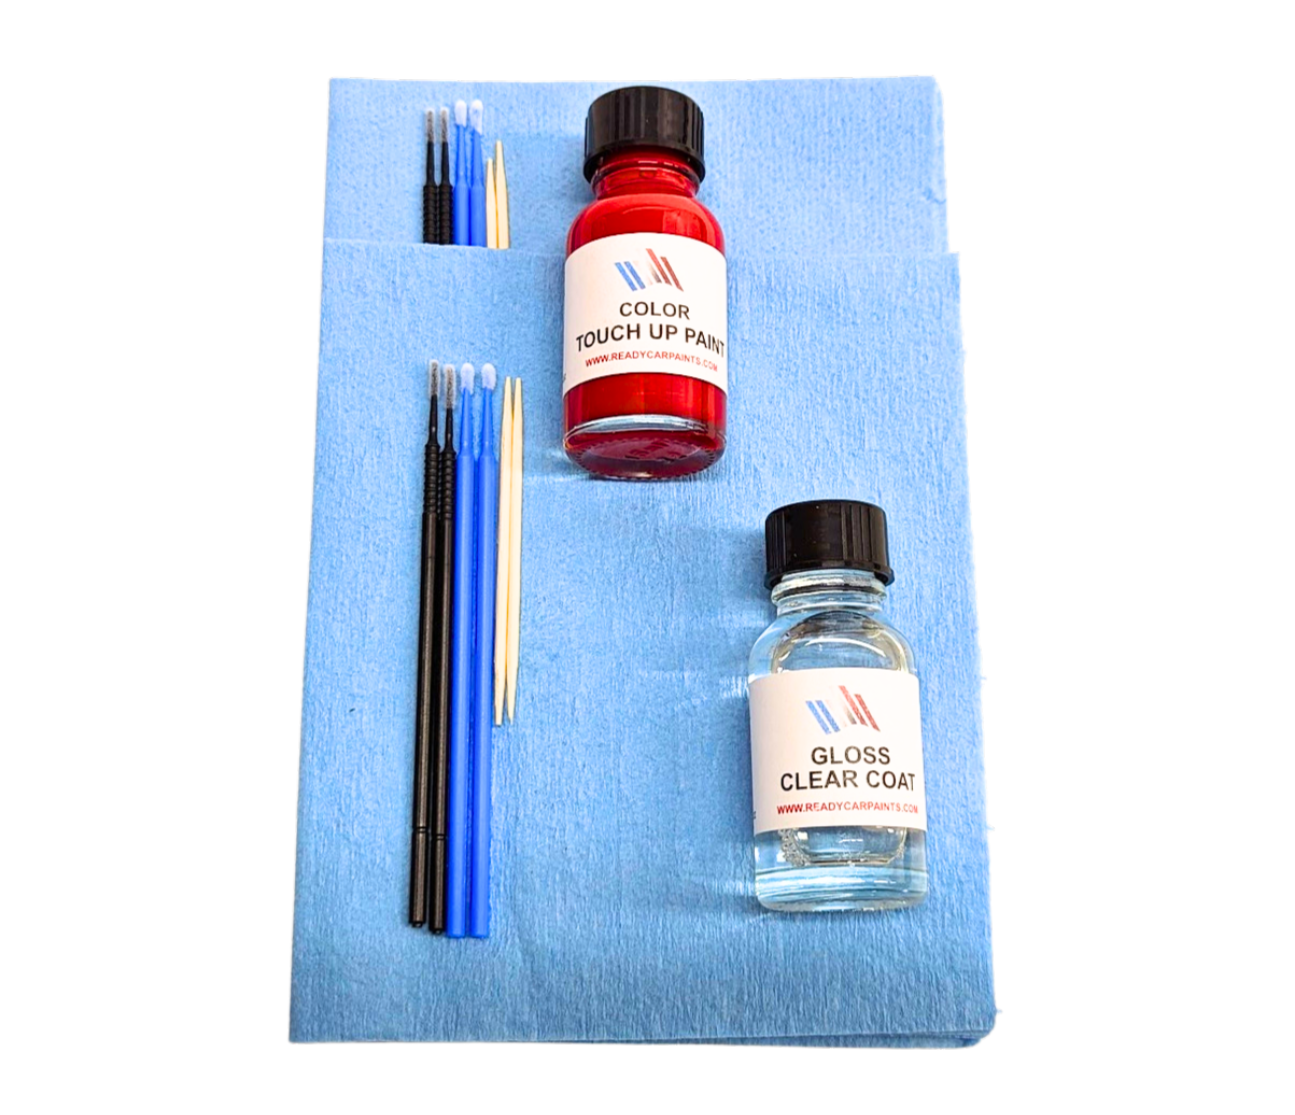 LEXUS 8S6 Nautical Blue Metallic Touch Up Paint Kit 100% OEM Color Match